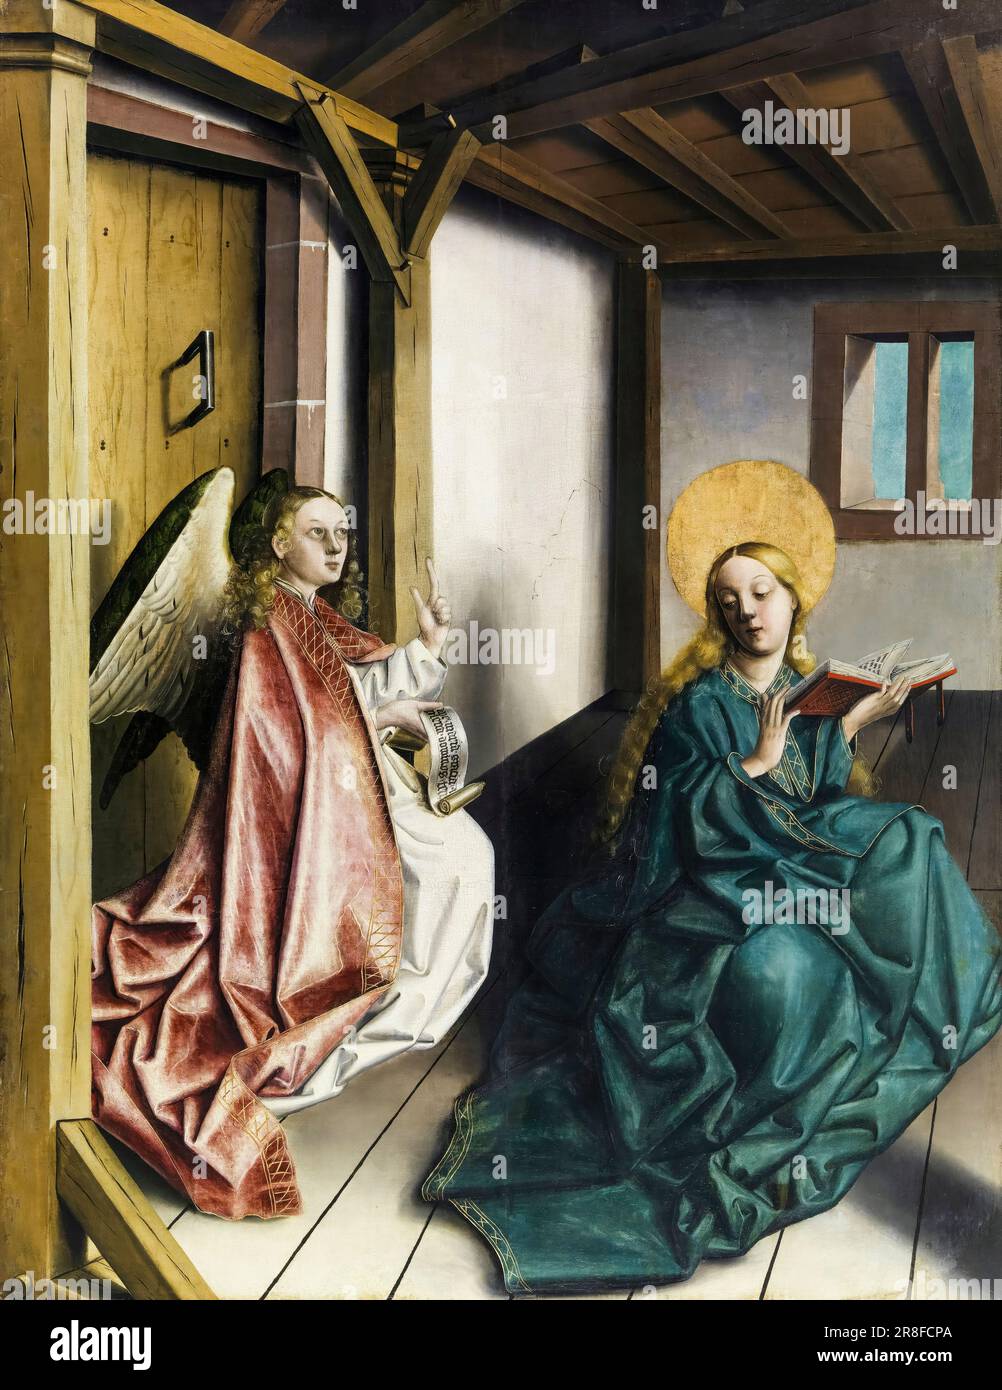 Konrad Witz, l'Annonciation, peinture à l'huile sur bois, 1437-1440 Banque D'Images